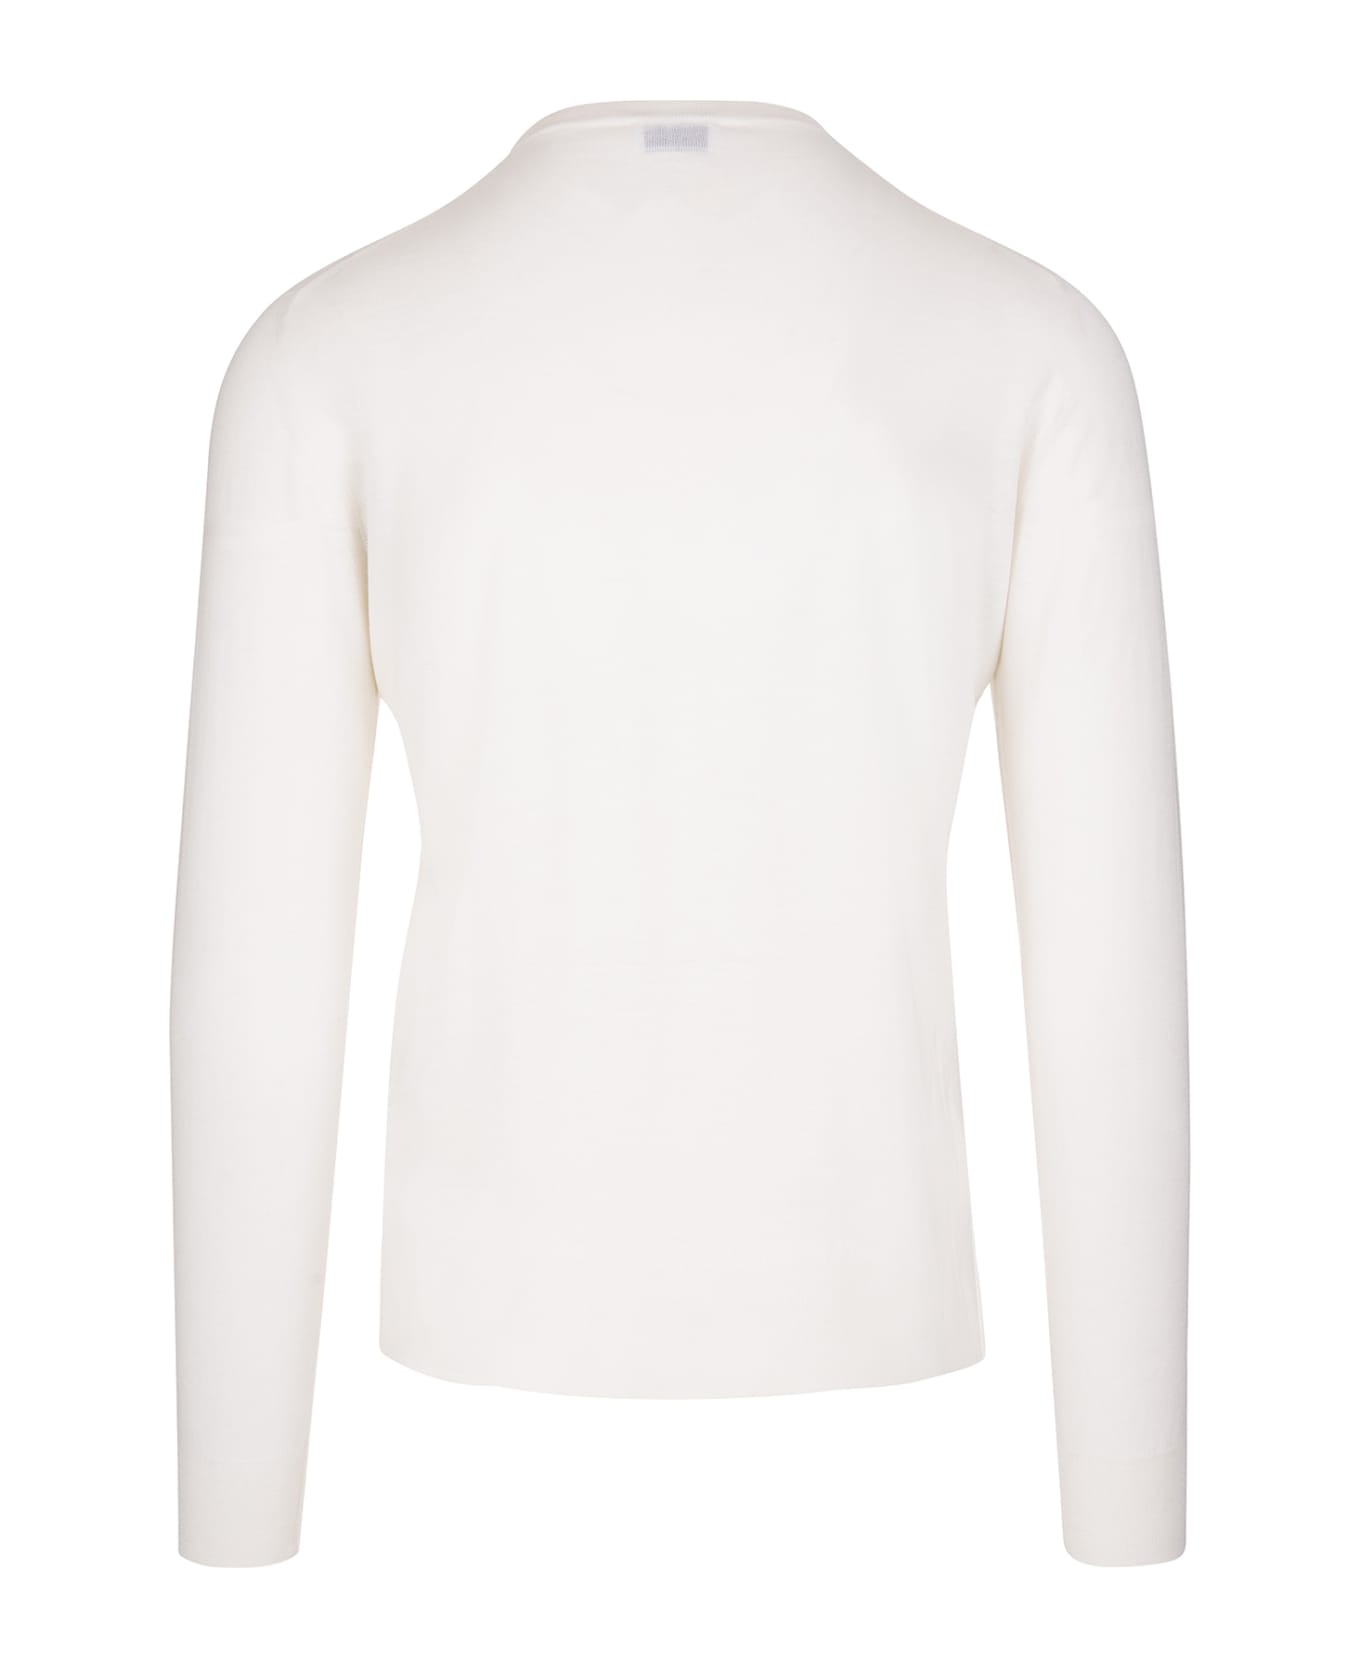 Fedeli Man Crew Neck Pullover In Cream Cashmere - White